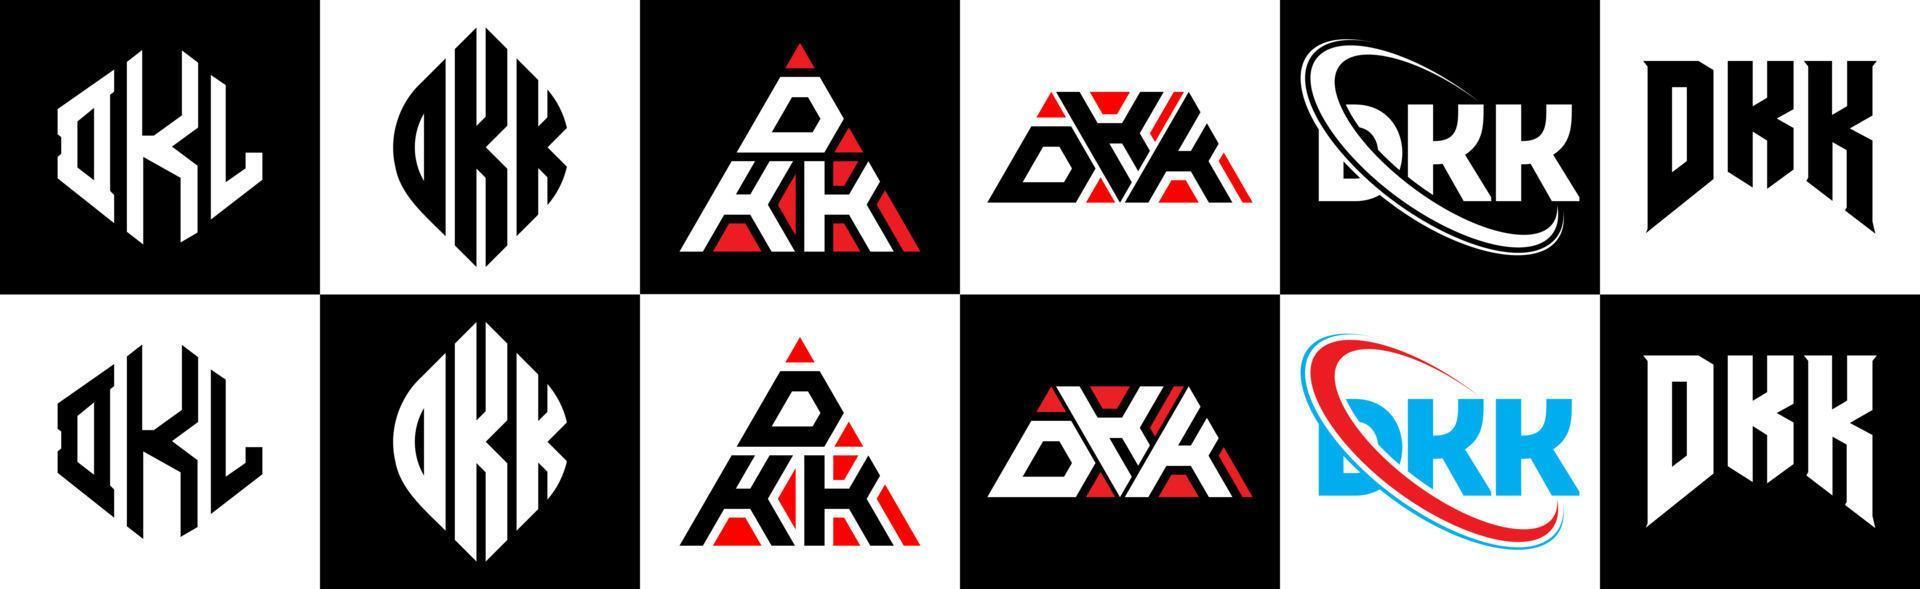 design de logotipo de carta dkk em seis estilo. dkk polígono, círculo, triângulo, hexágono, estilo plano e simples com logotipo de carta de variação de cor preto e branco definido em uma prancheta. dkk logotipo minimalista e clássico vetor